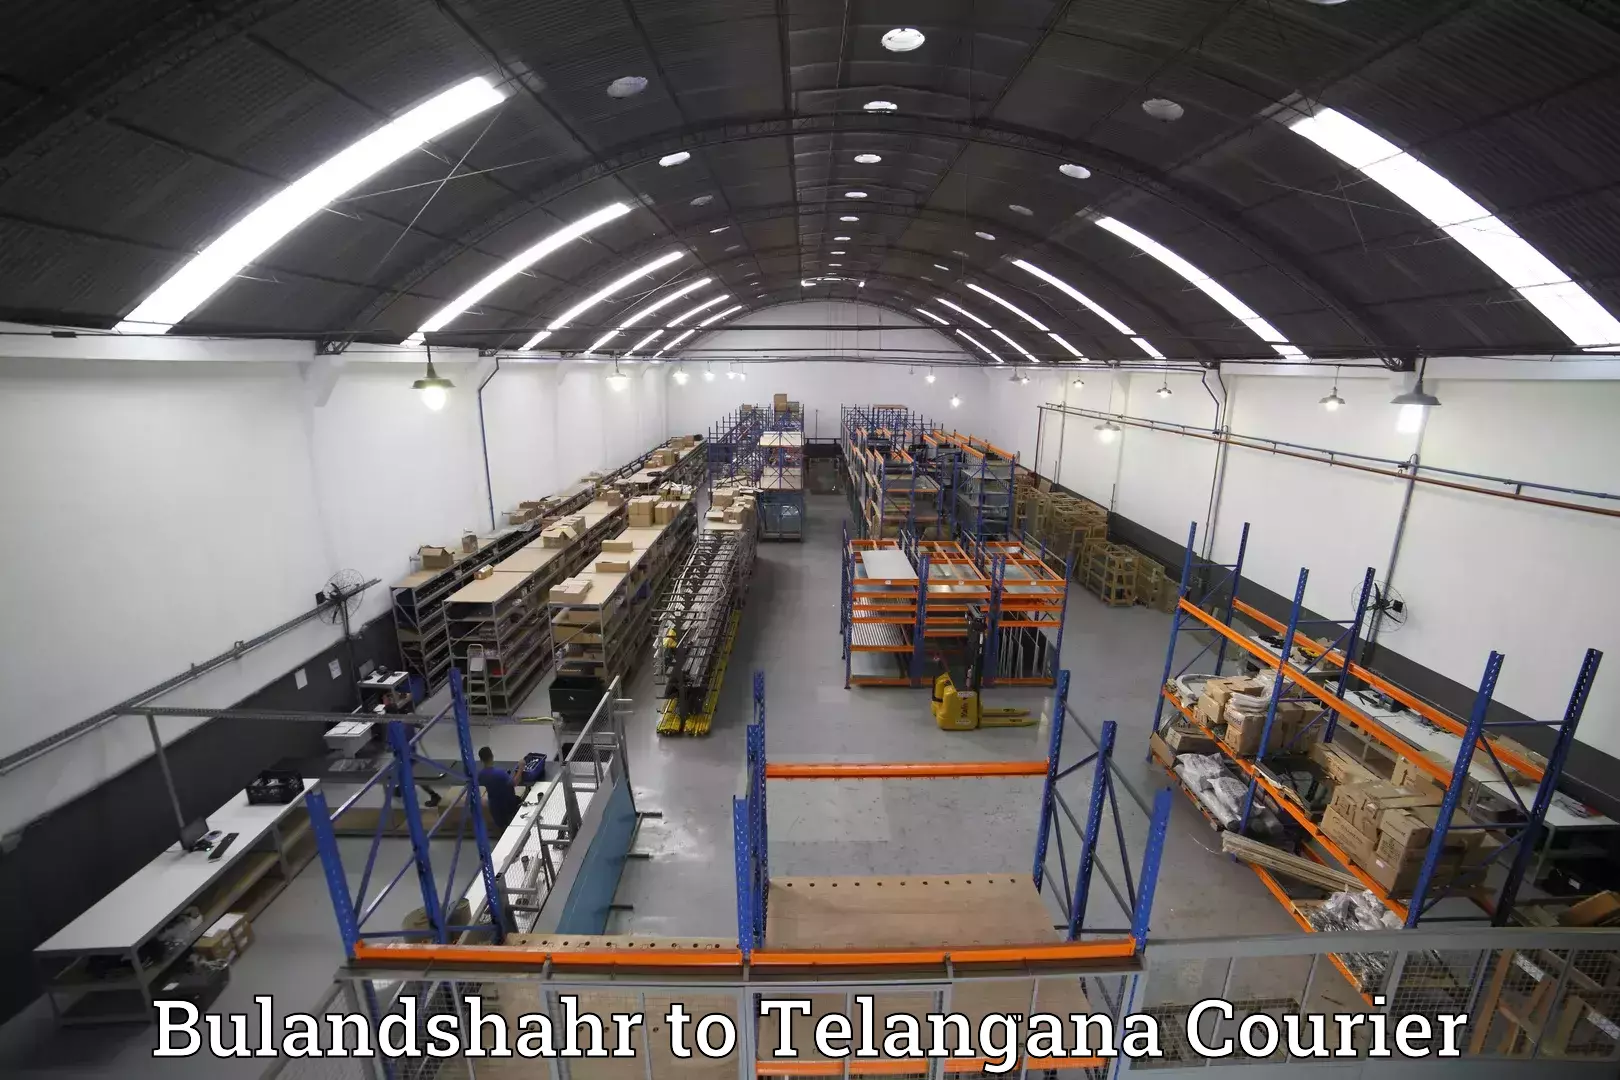 Luggage shipment processing Bulandshahr to Danthalapally